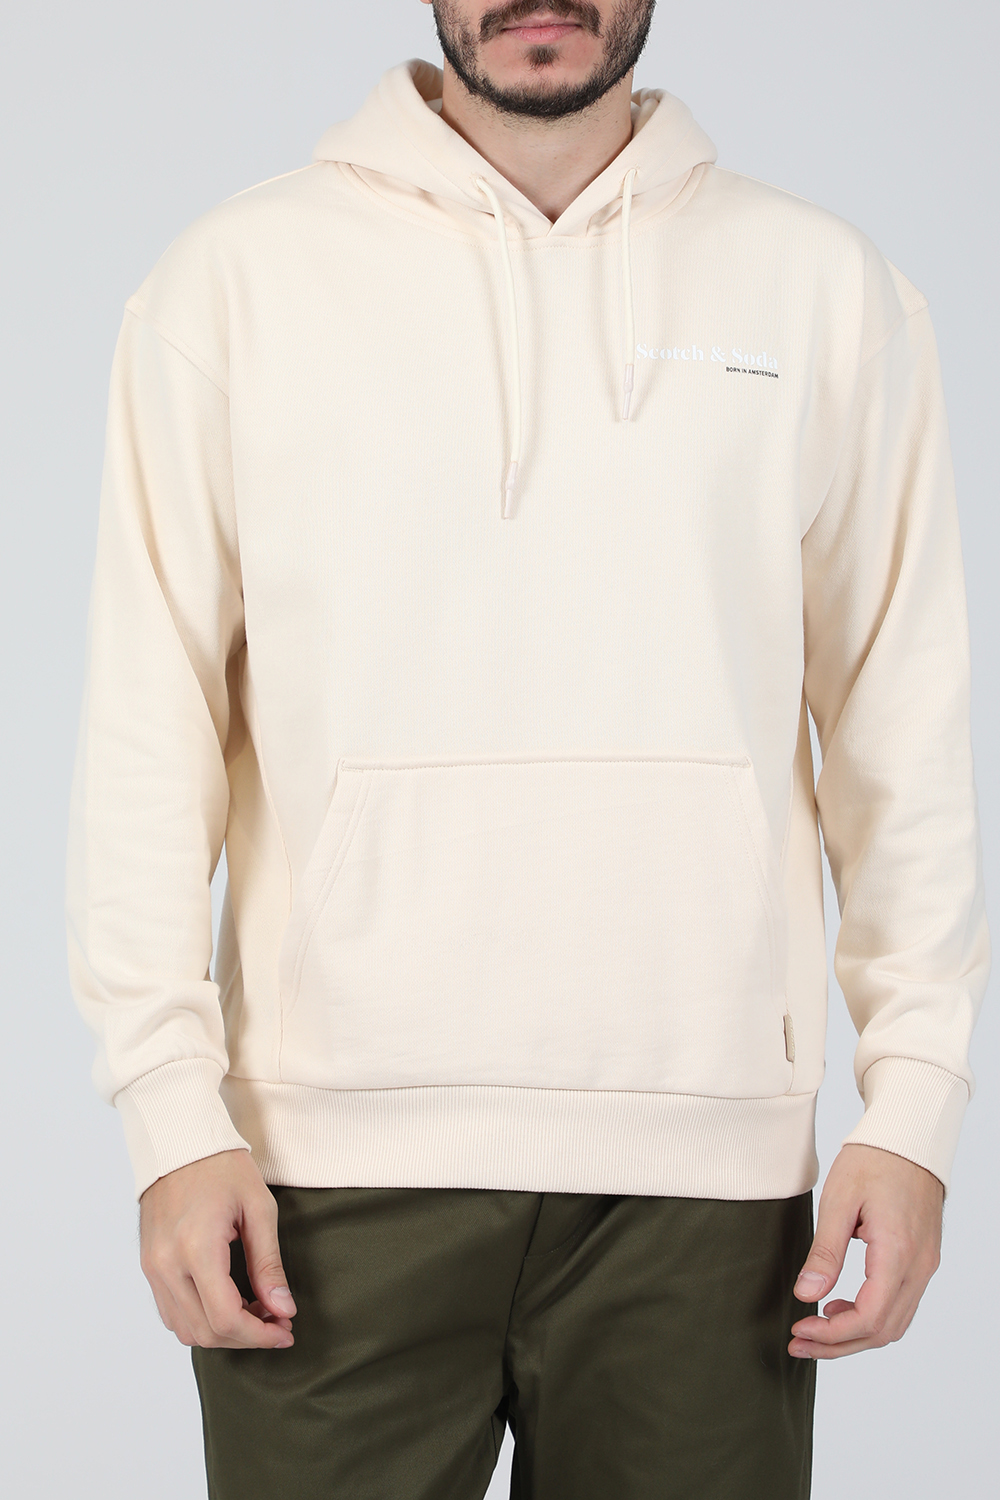 Ανδρικά/Ρούχα/Μπλούζες/Φούτερ SCOTCH & SODA - Ανδρική φούτερ μπλούζα SCOTCH & SODA Relaxed-fit felpa hoodie μπεζ